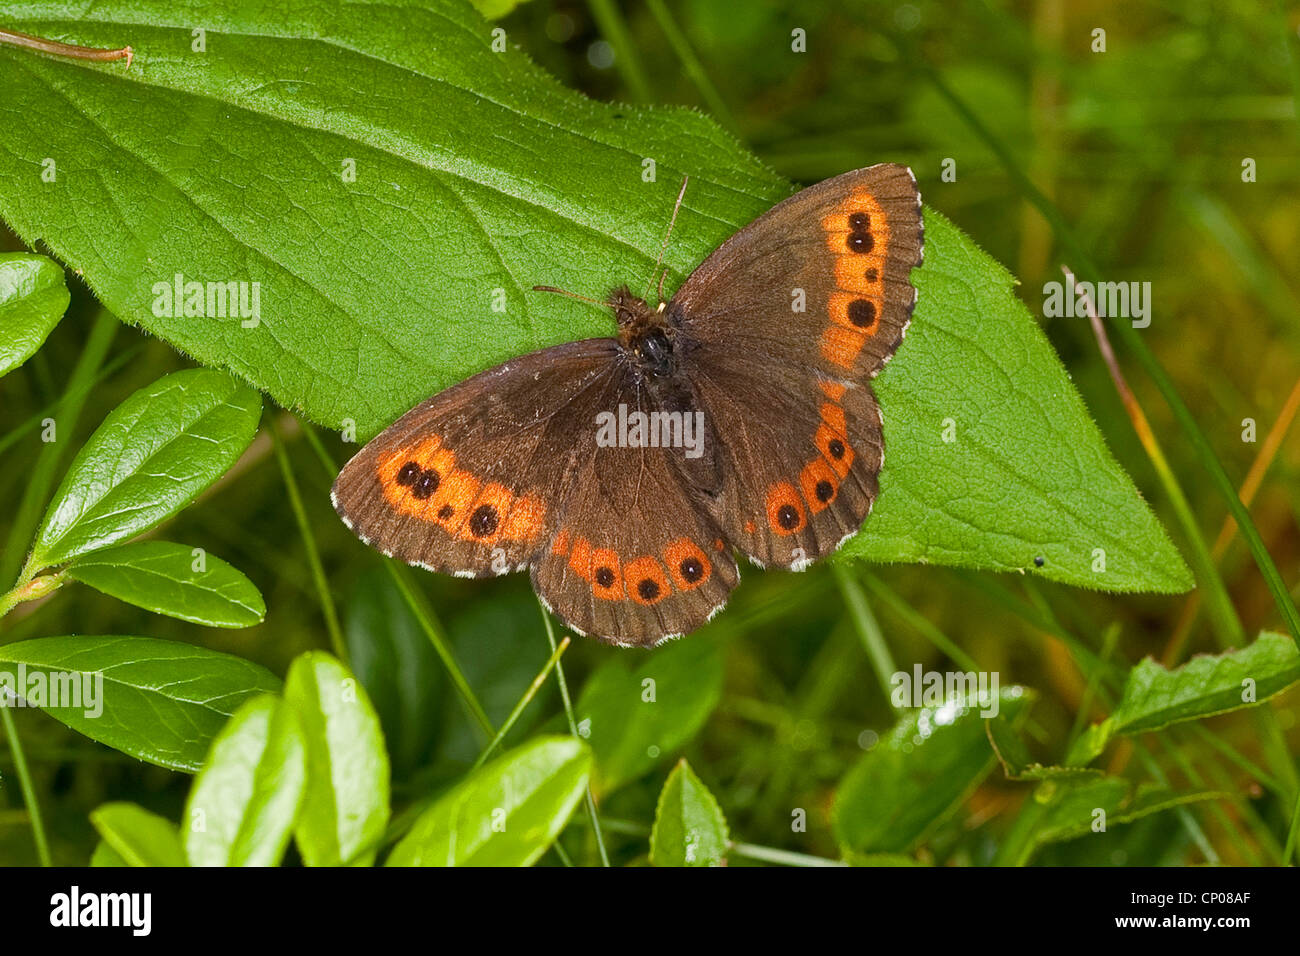 Arran brown, Erebia ligea (un papillon), assis sur une feuille, Allemagne Banque D'Images